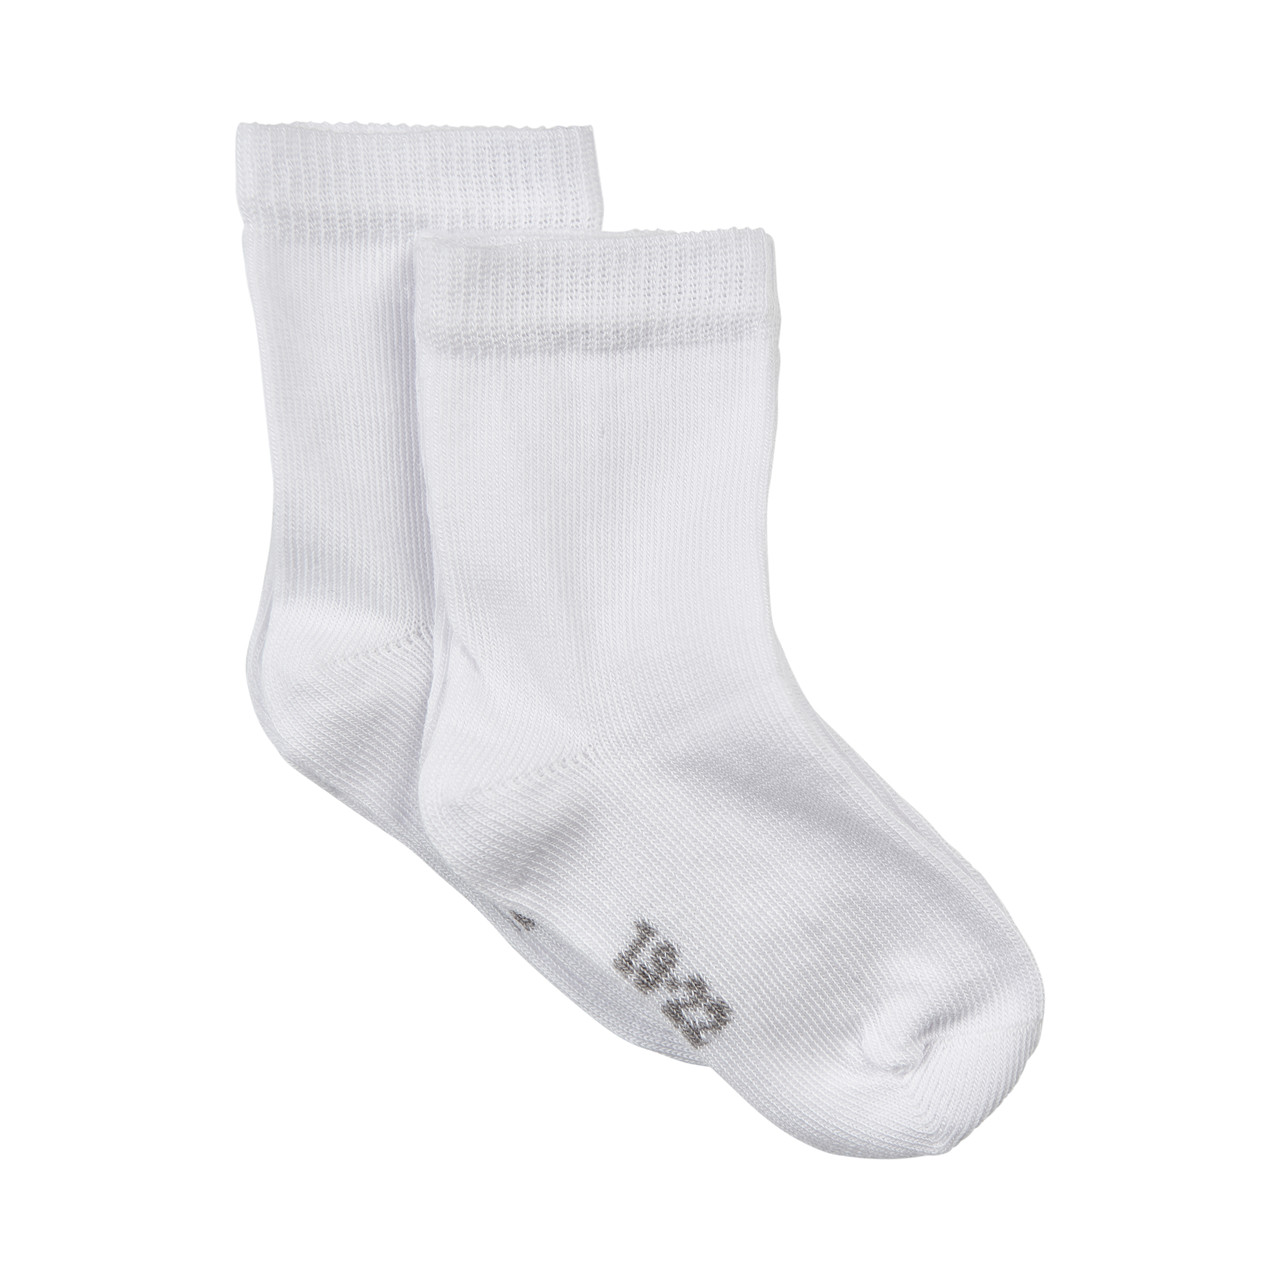 Ankle sock, 2pk - White